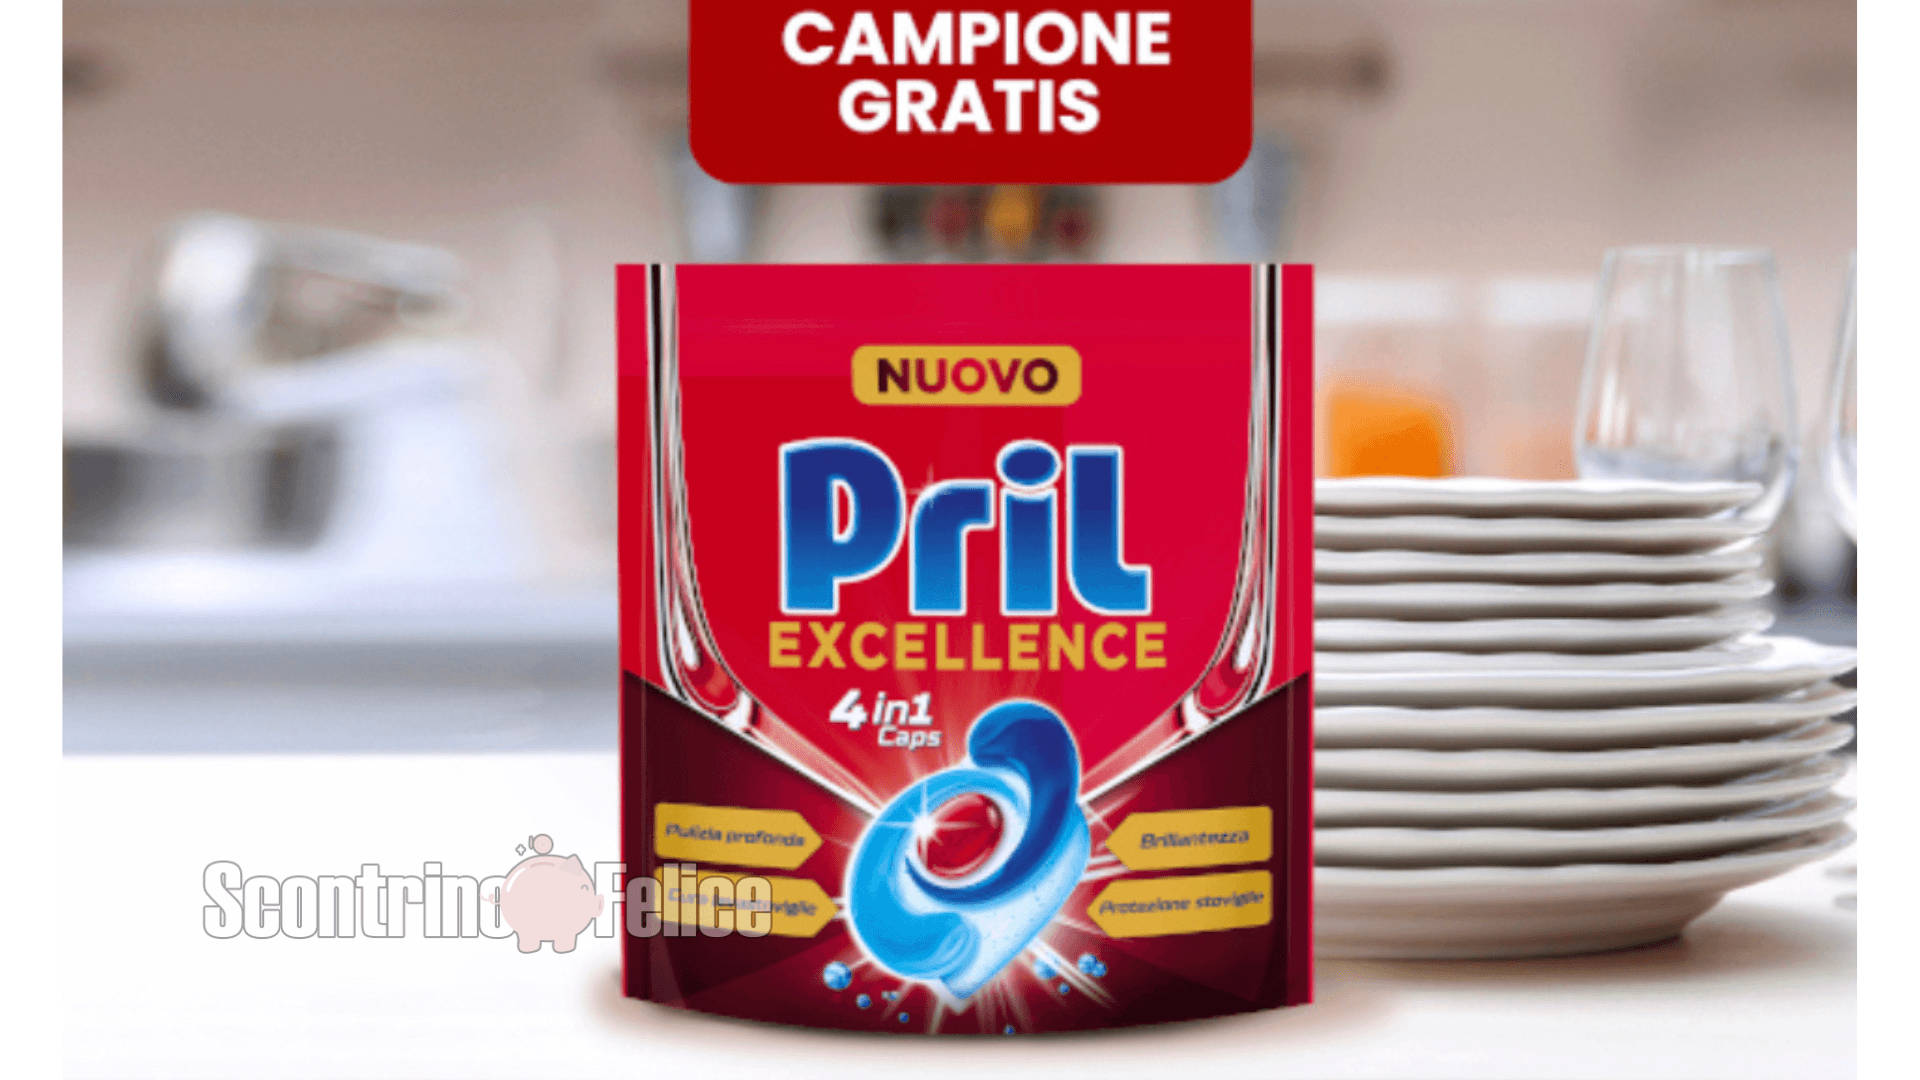 Pril Excellence 4in1 Caps: richiedi subito il campione gratuito! 2